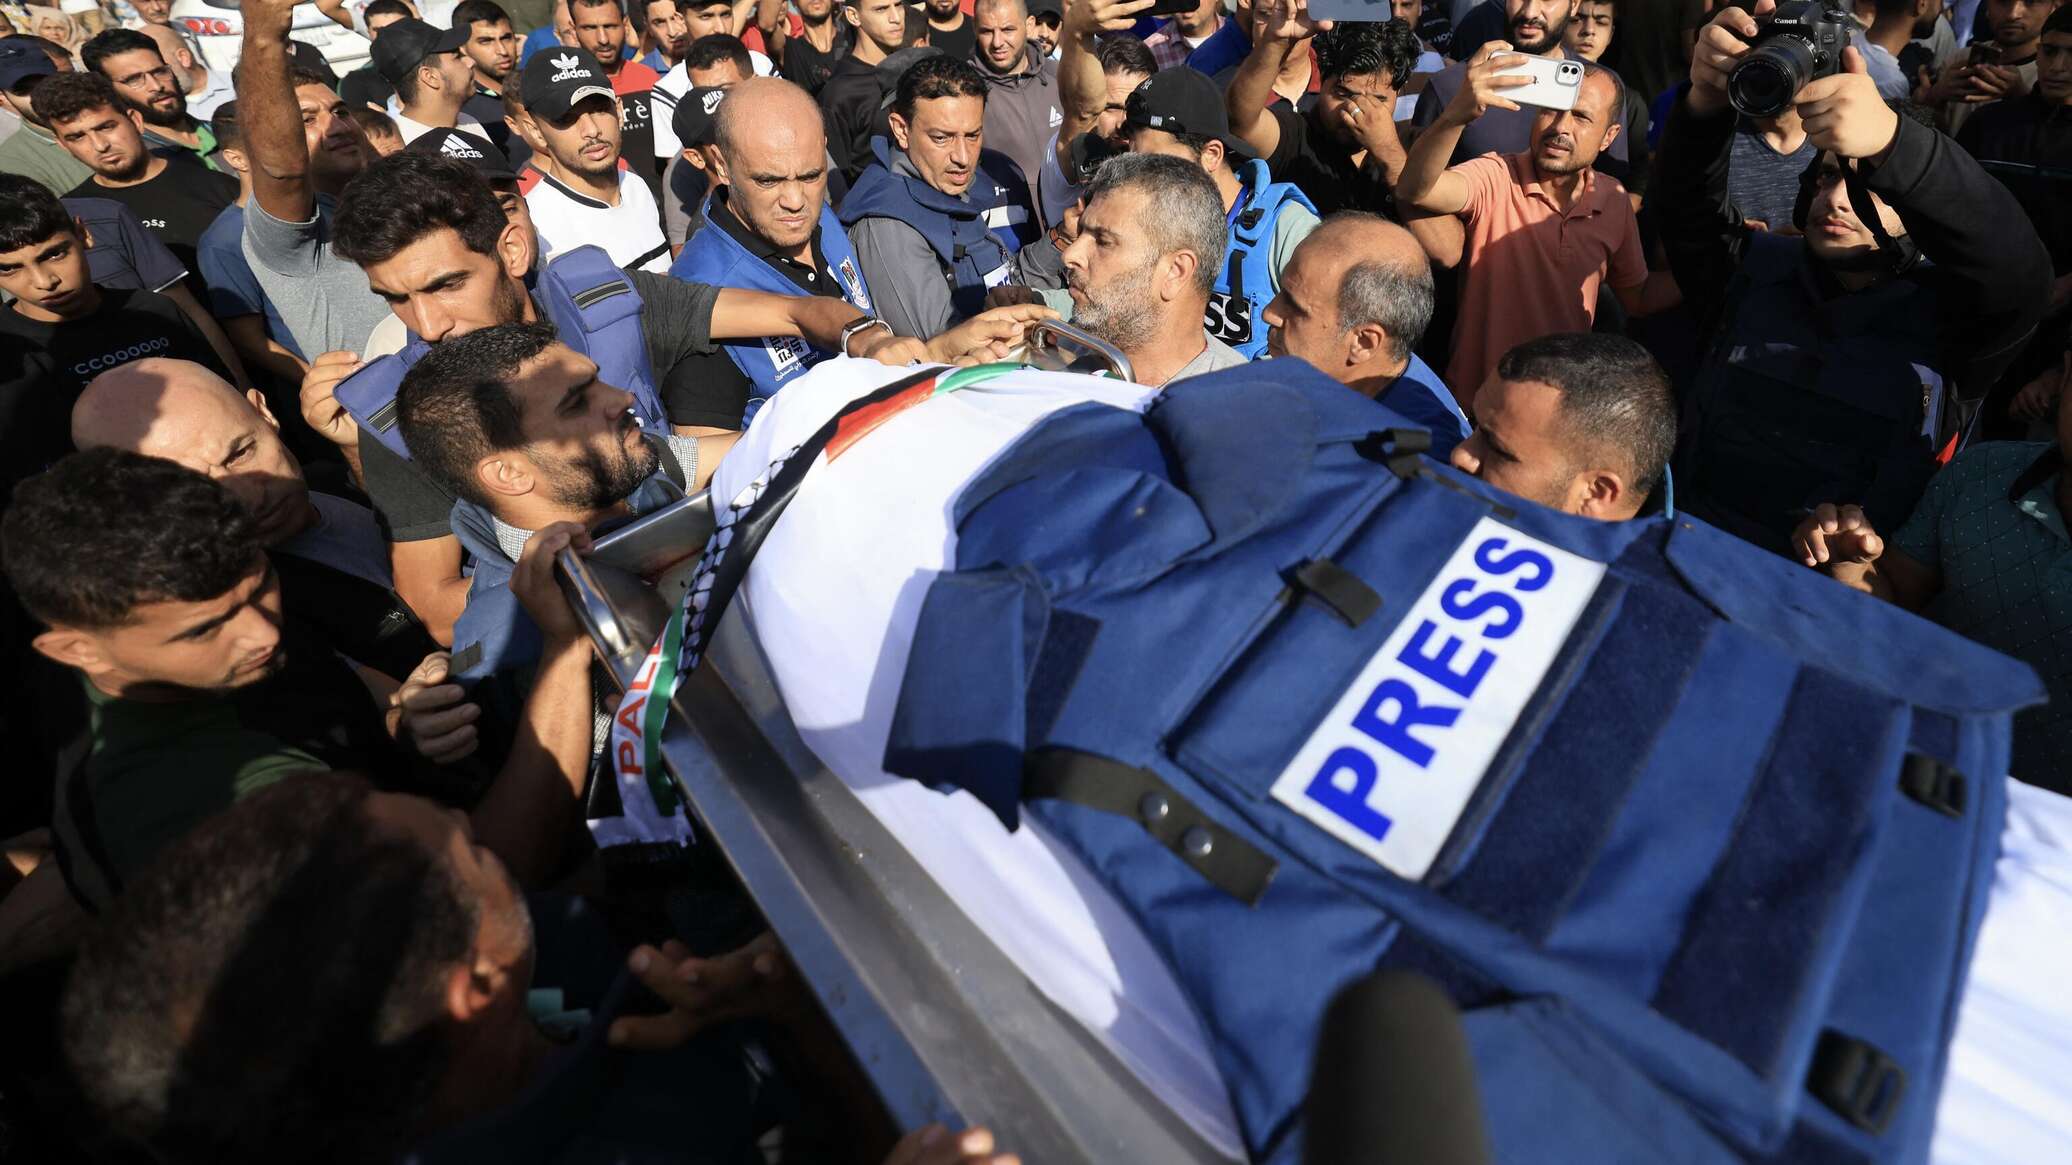 وكالة وفا: ارتفاع عدد القتلى من الصحفيين في غزة إلى 64 منذ بدء العدوان الإسرائيلي